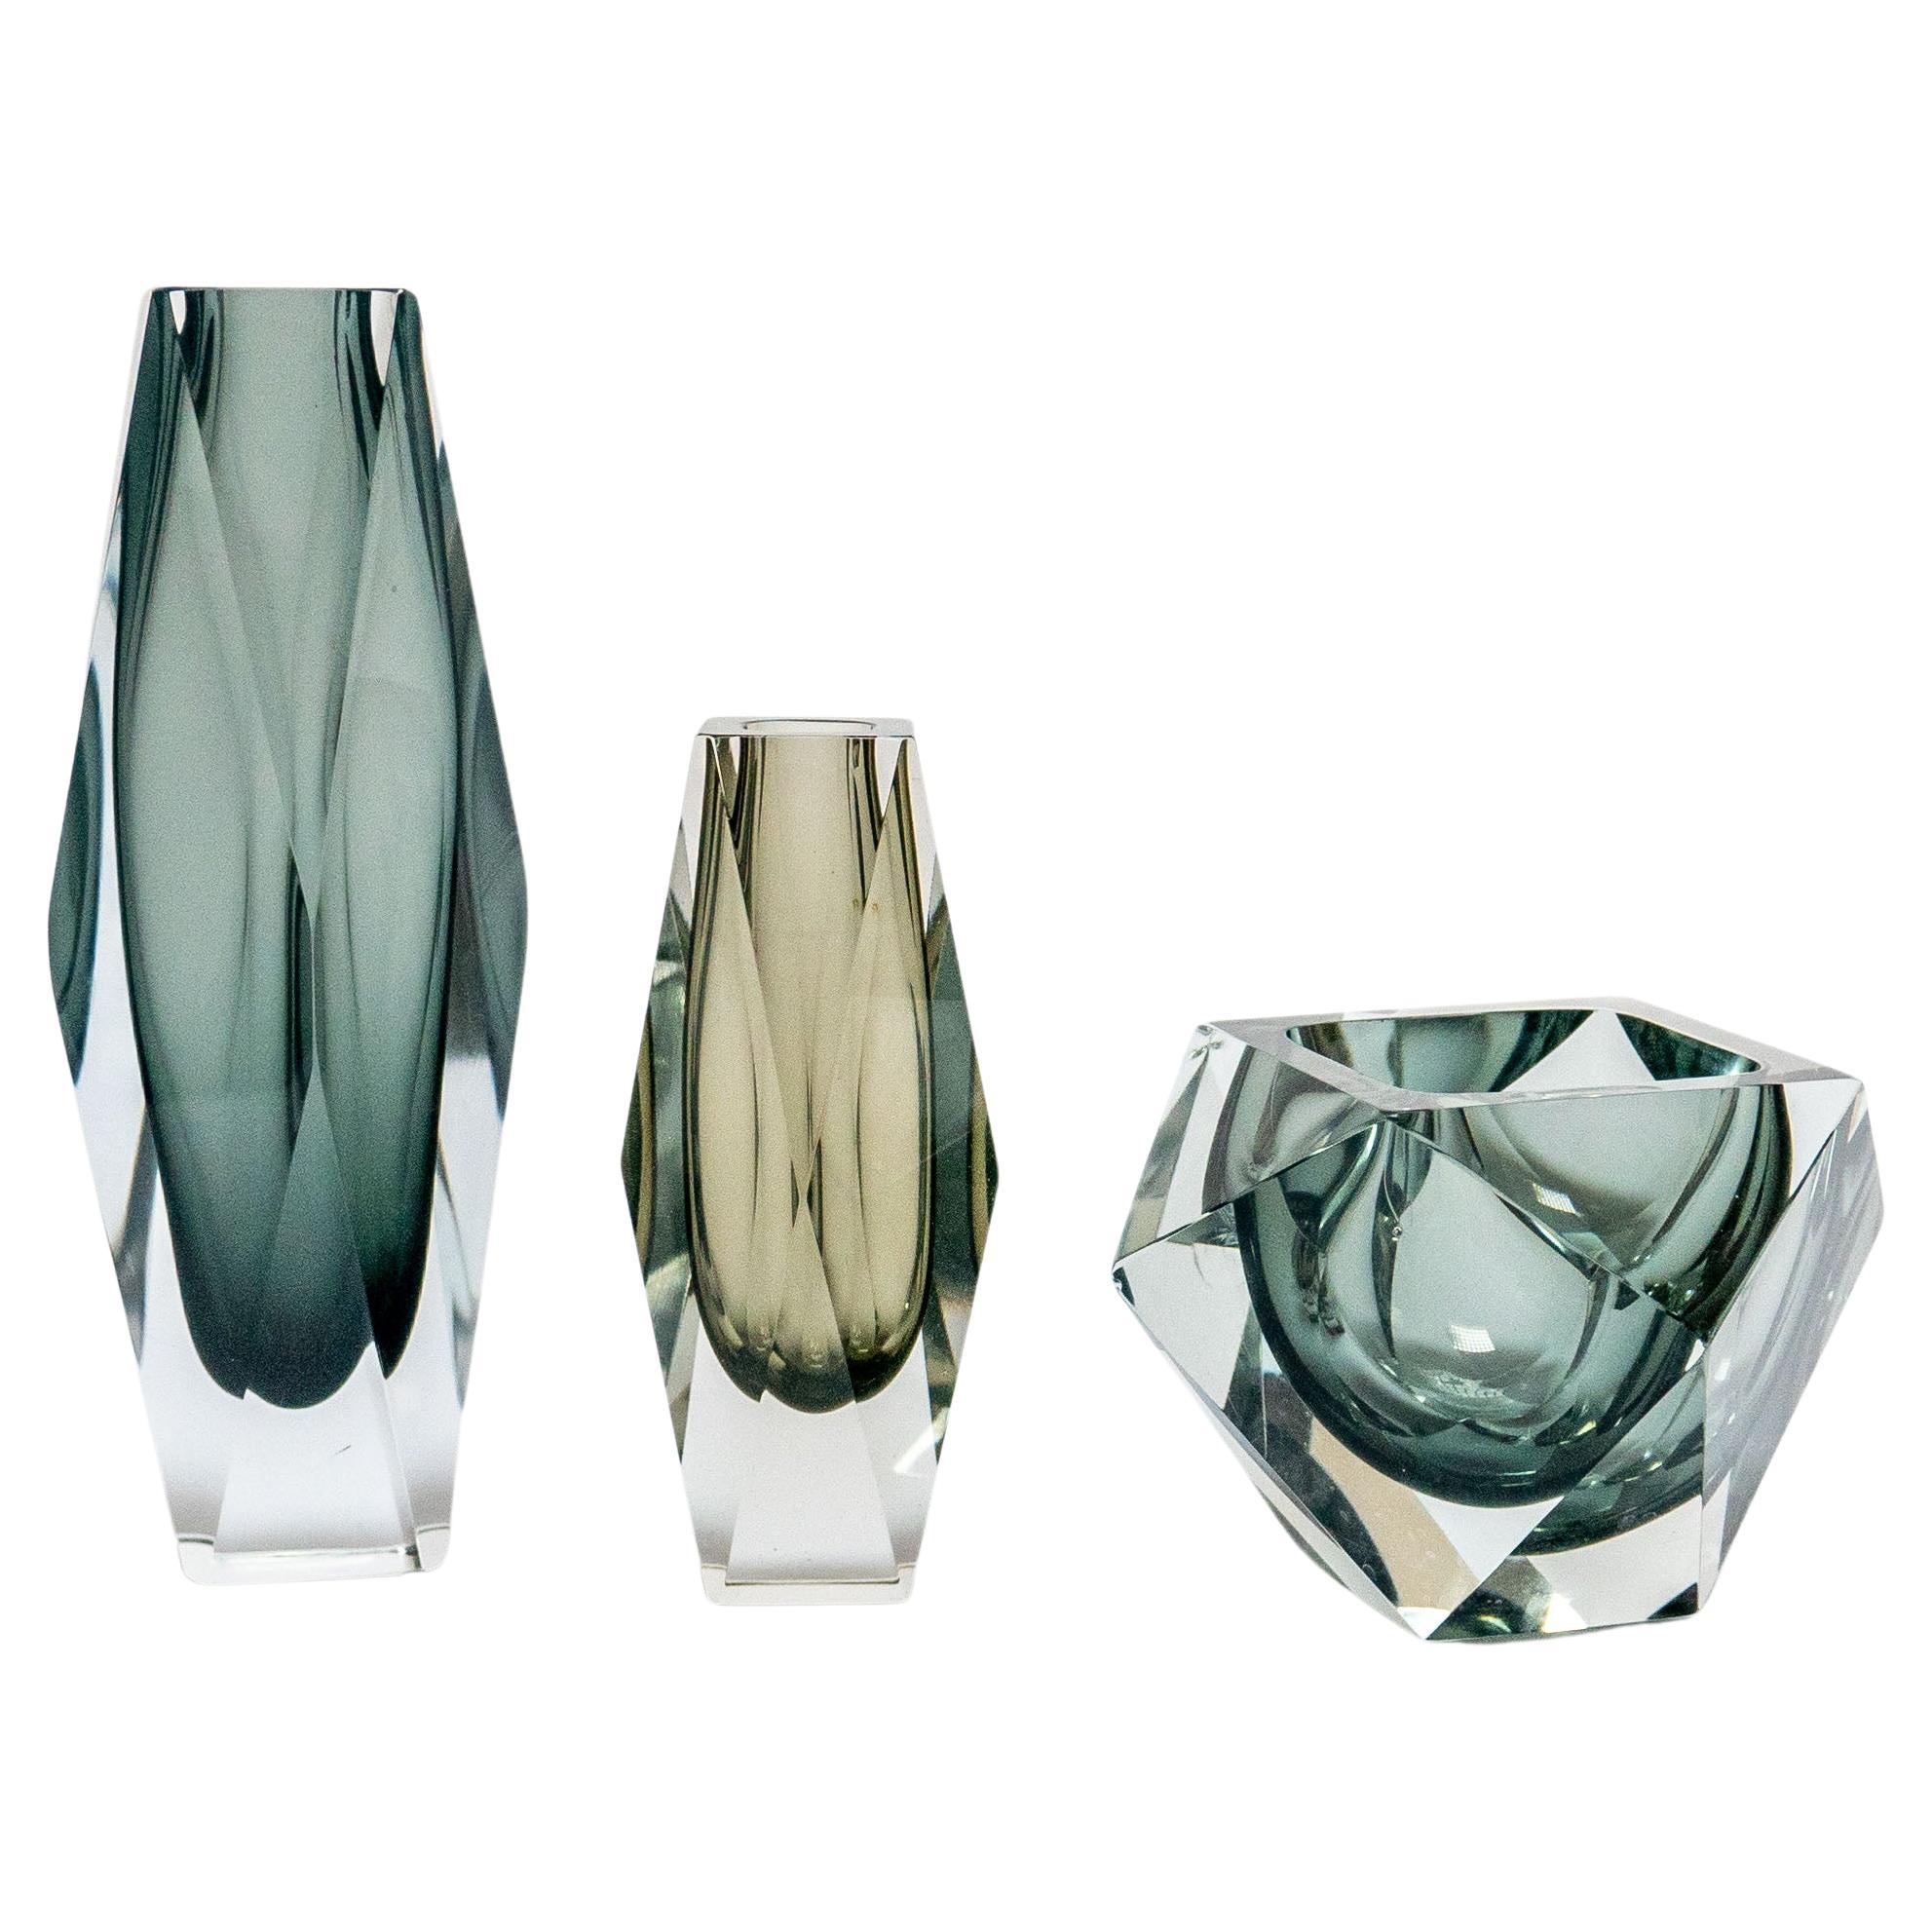 Satz von drei Vasen aus geometrischem Murano-Glas, grau und schwarz, Flavio Poli